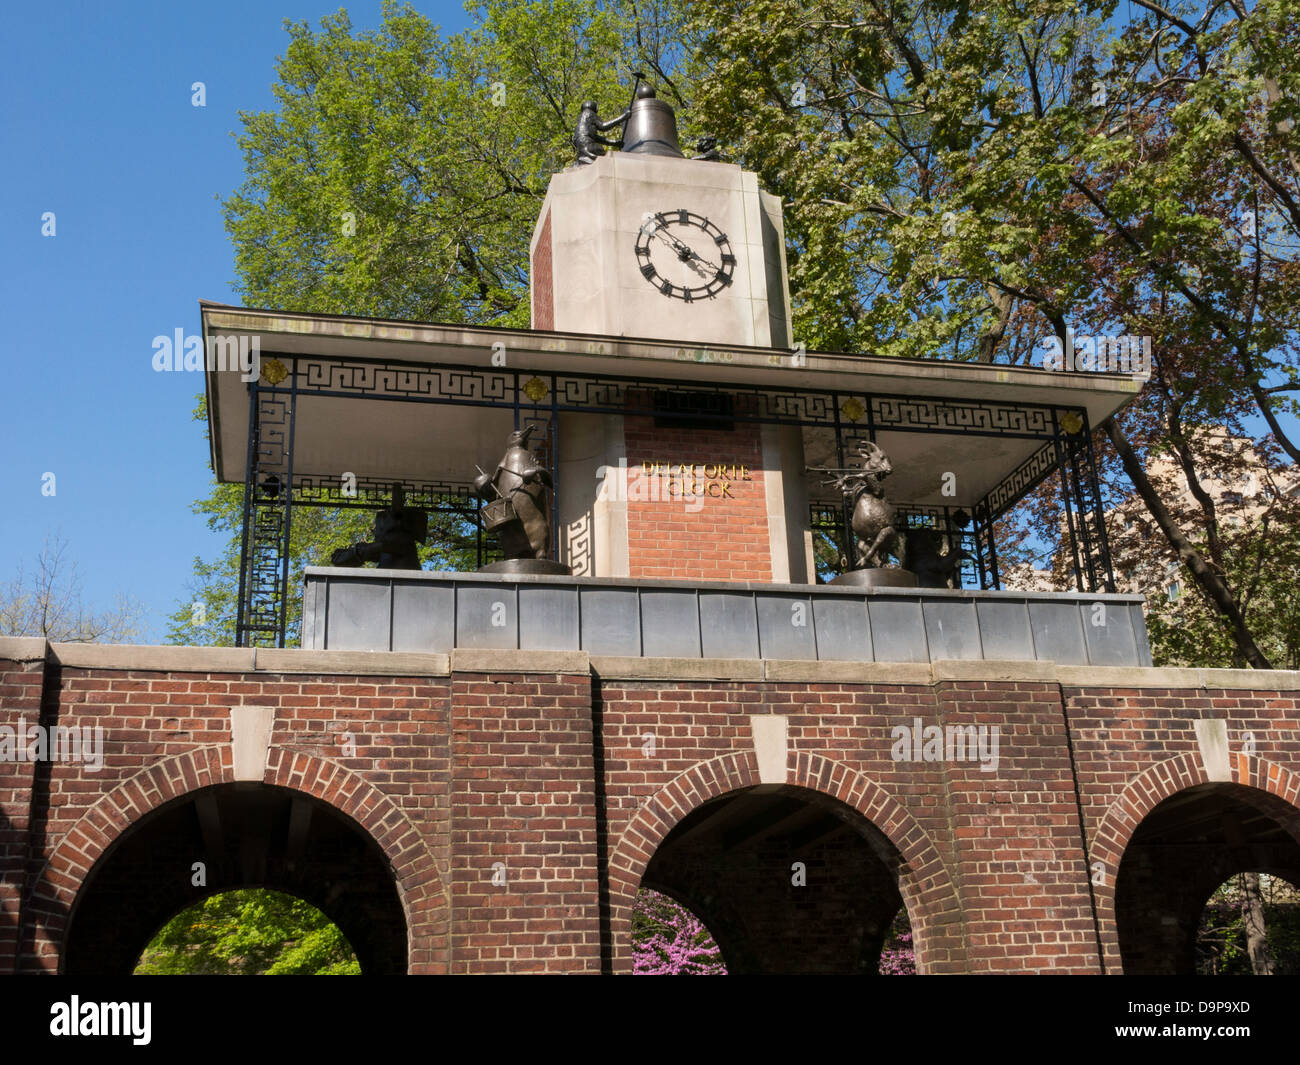 Delacorte Clock nel Central Park di New York Foto Stock